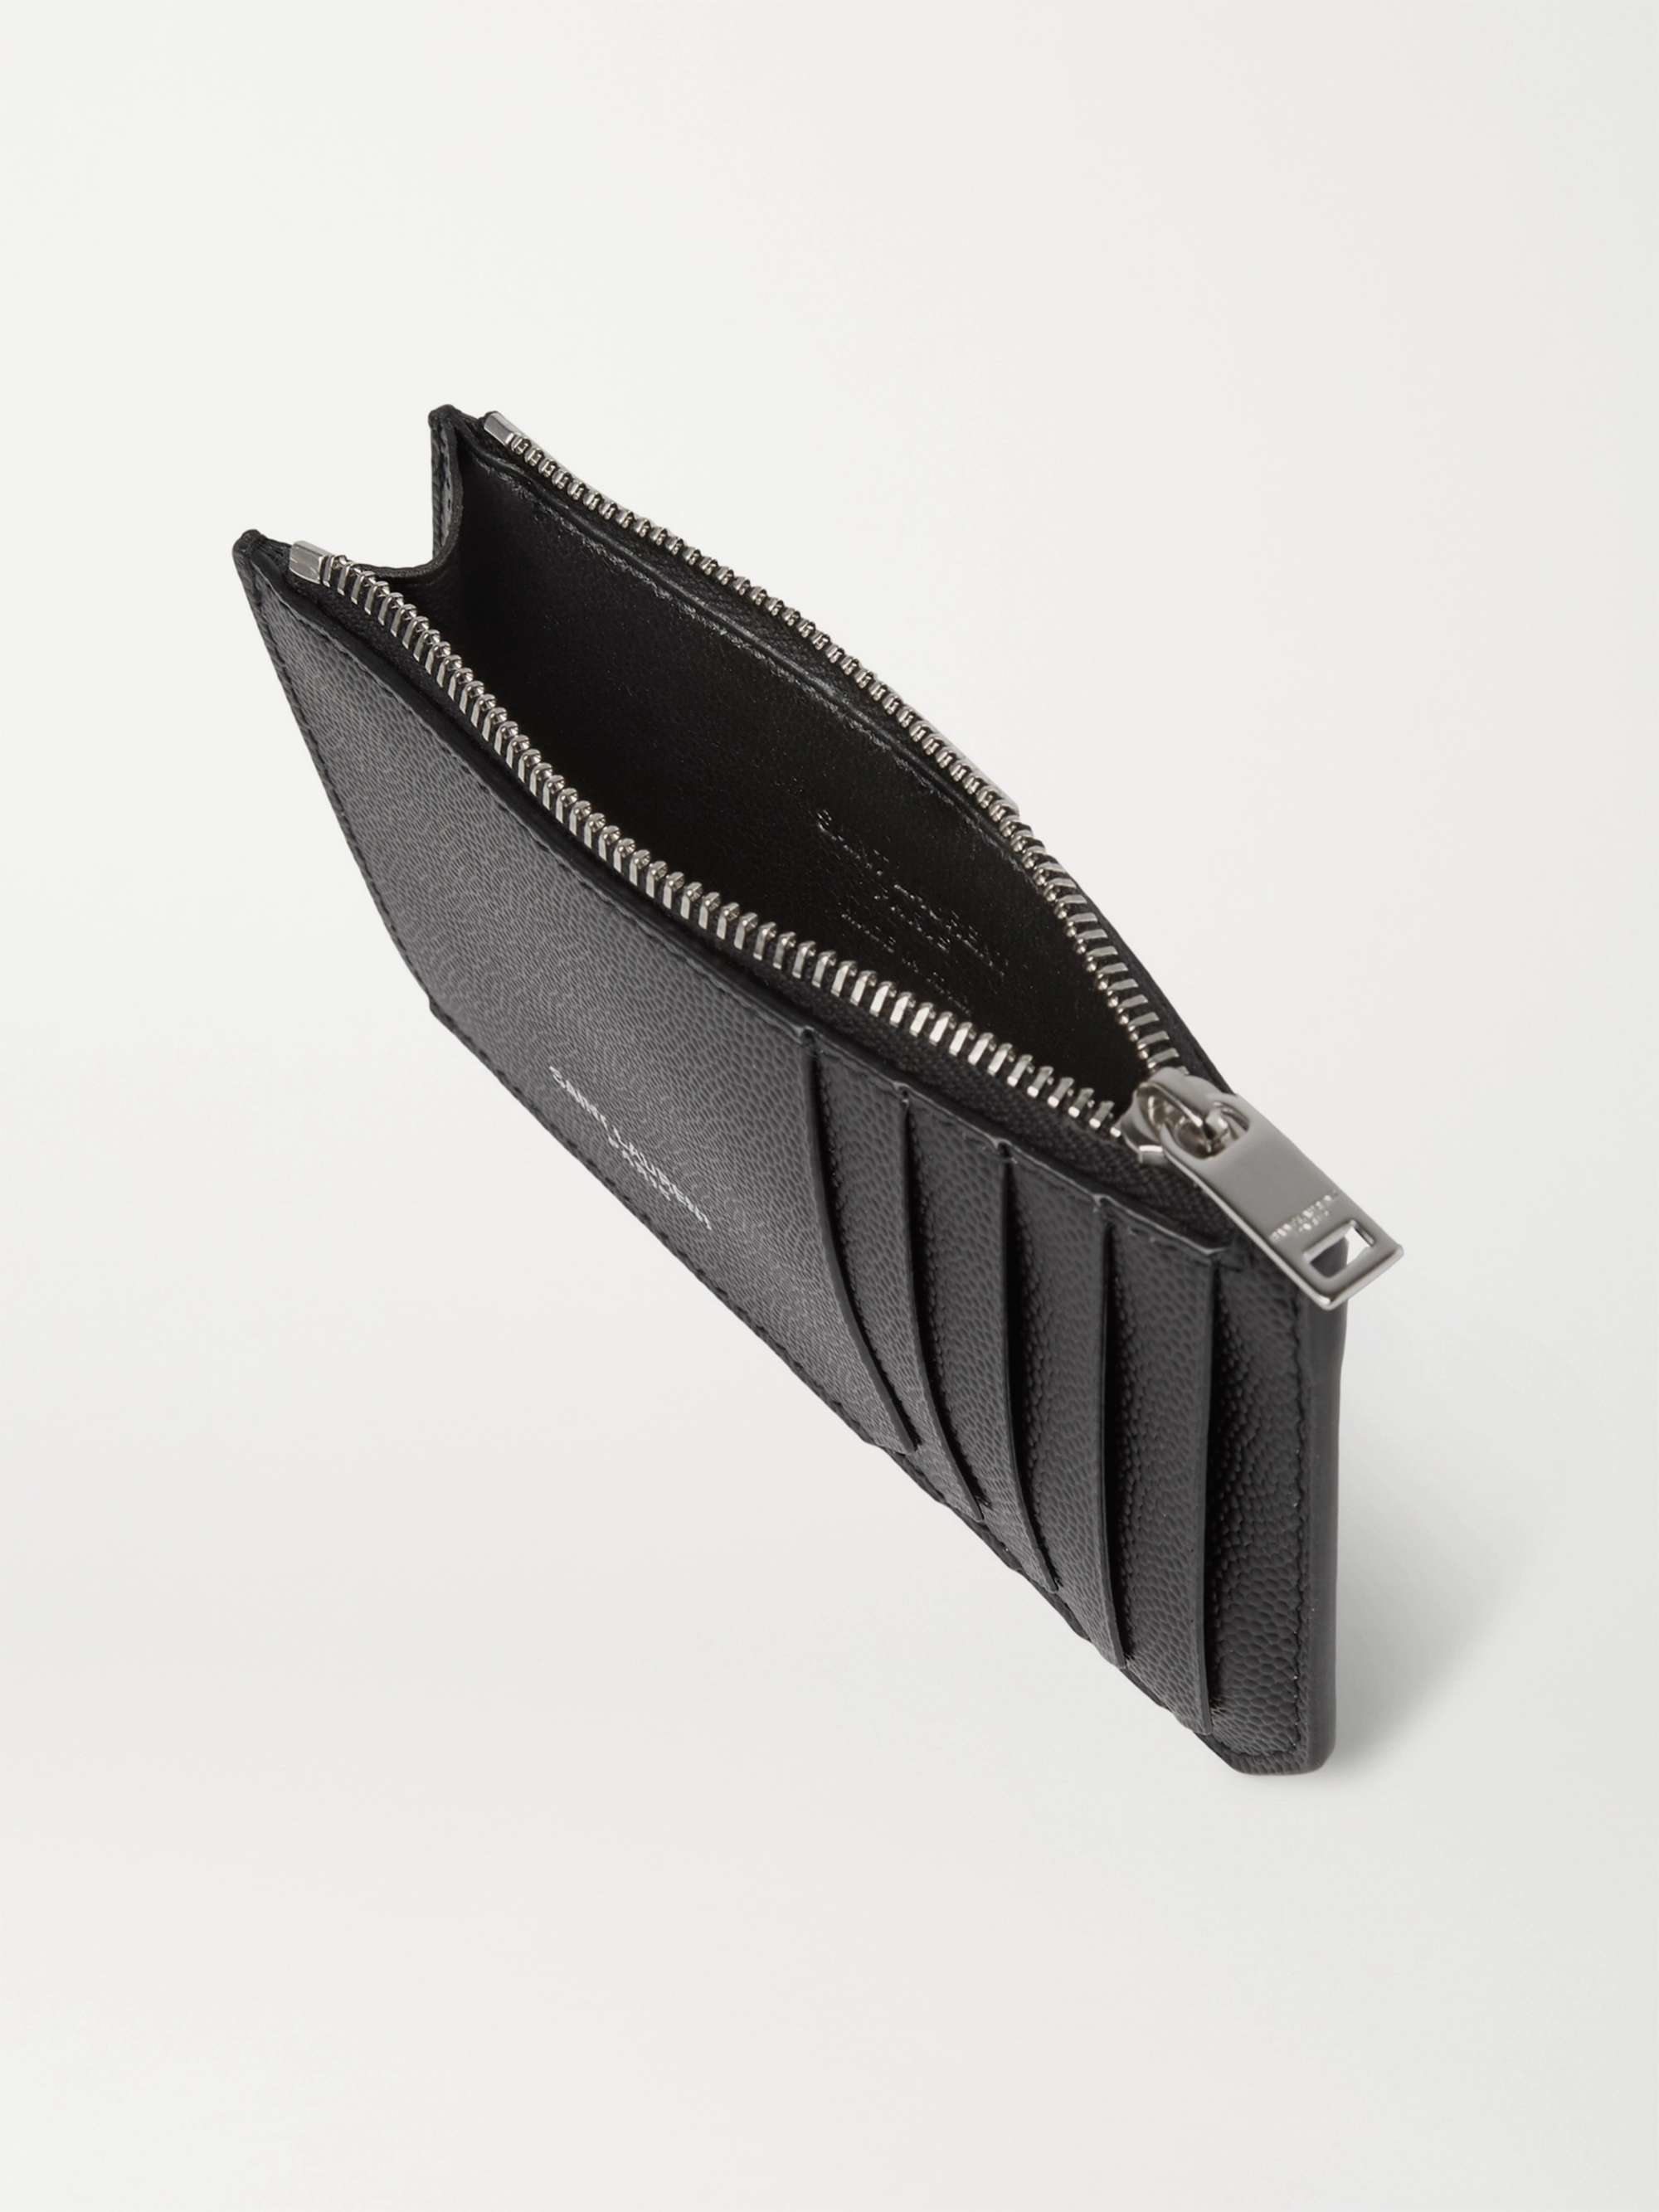 SAINT LAURENT Pebble-Grain Leather Cardholder for Men | MR PORTER